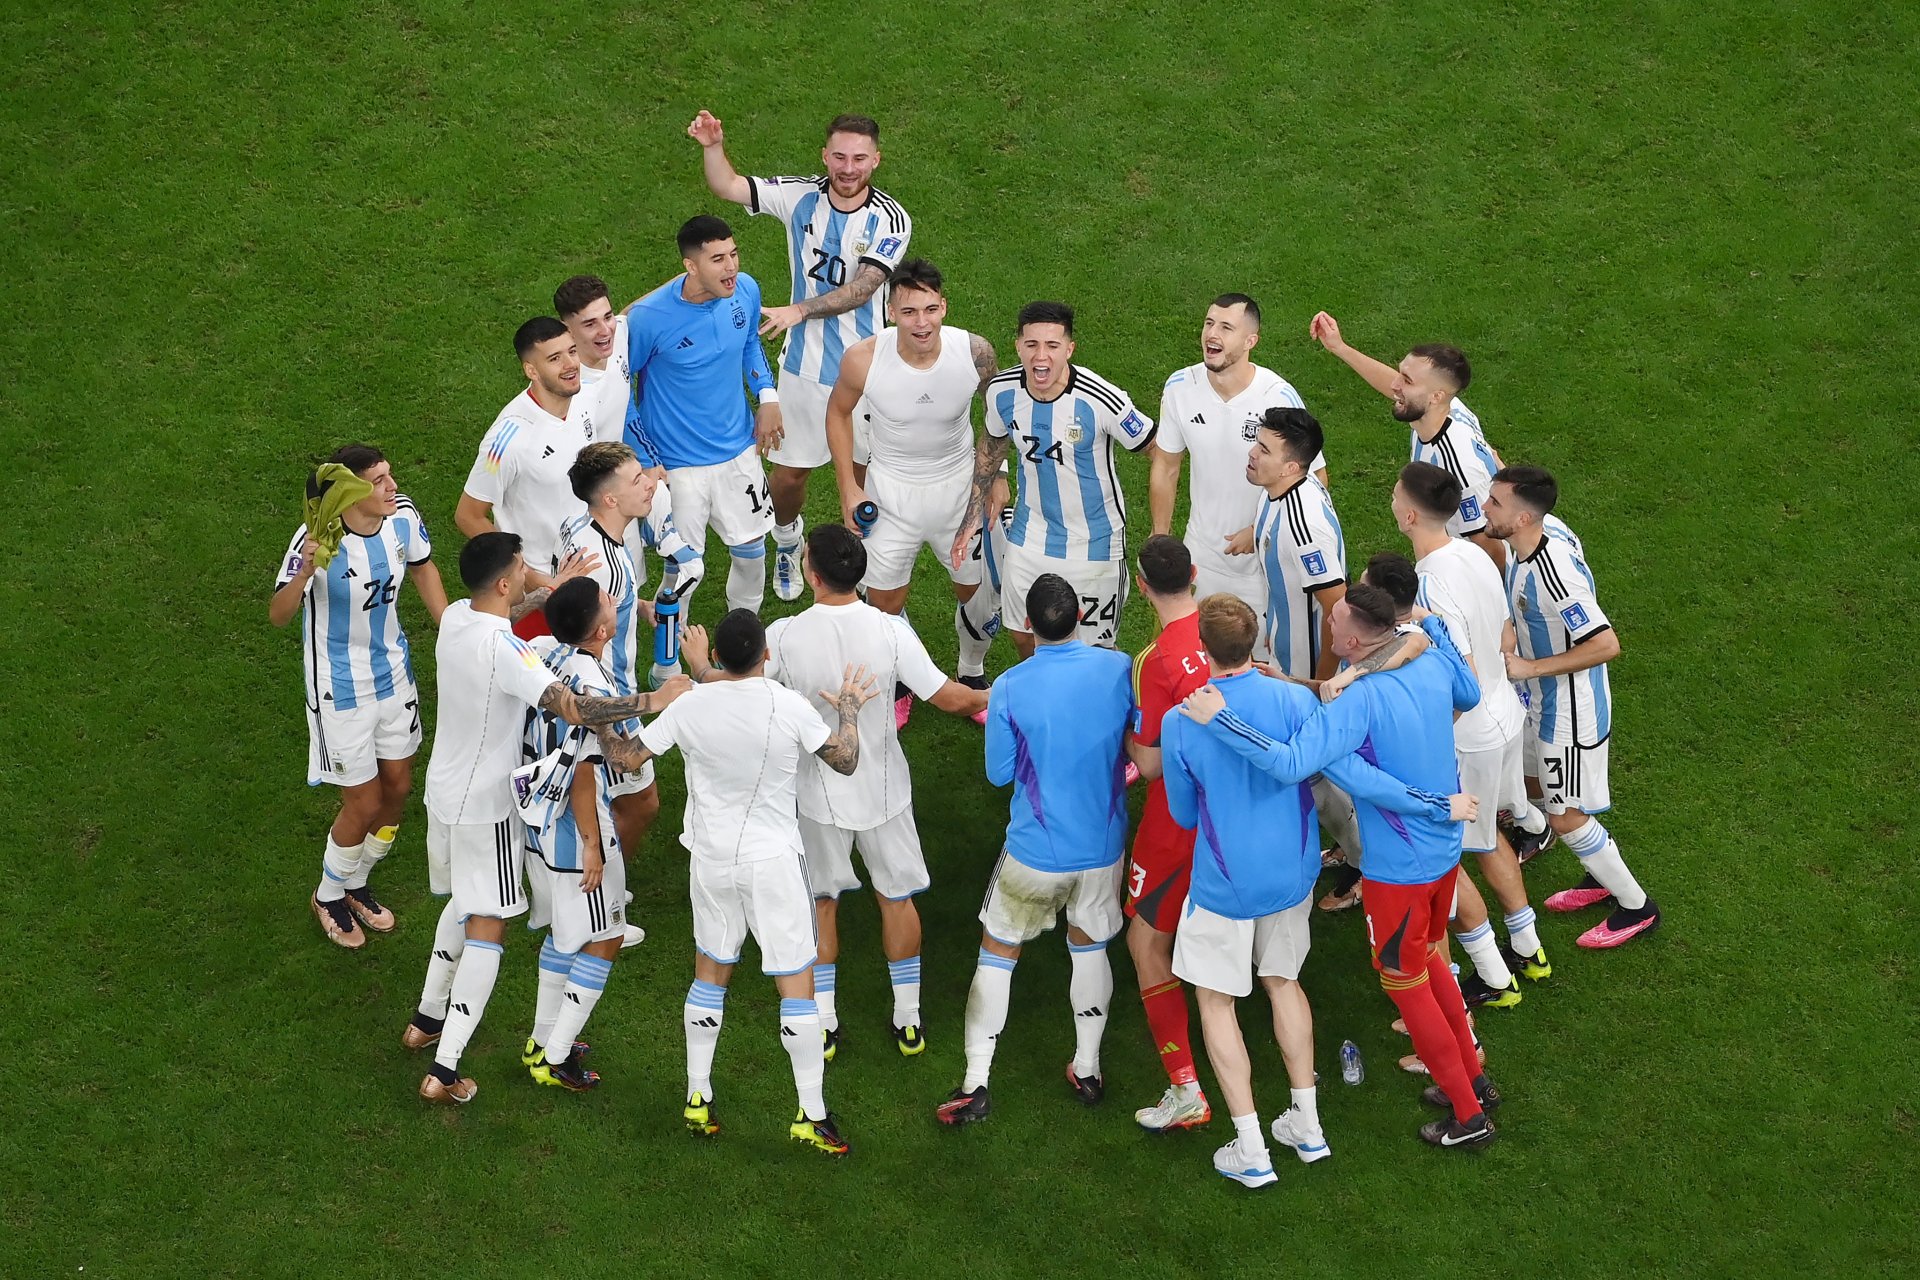 La Selección de Lio Messi superó la grieta